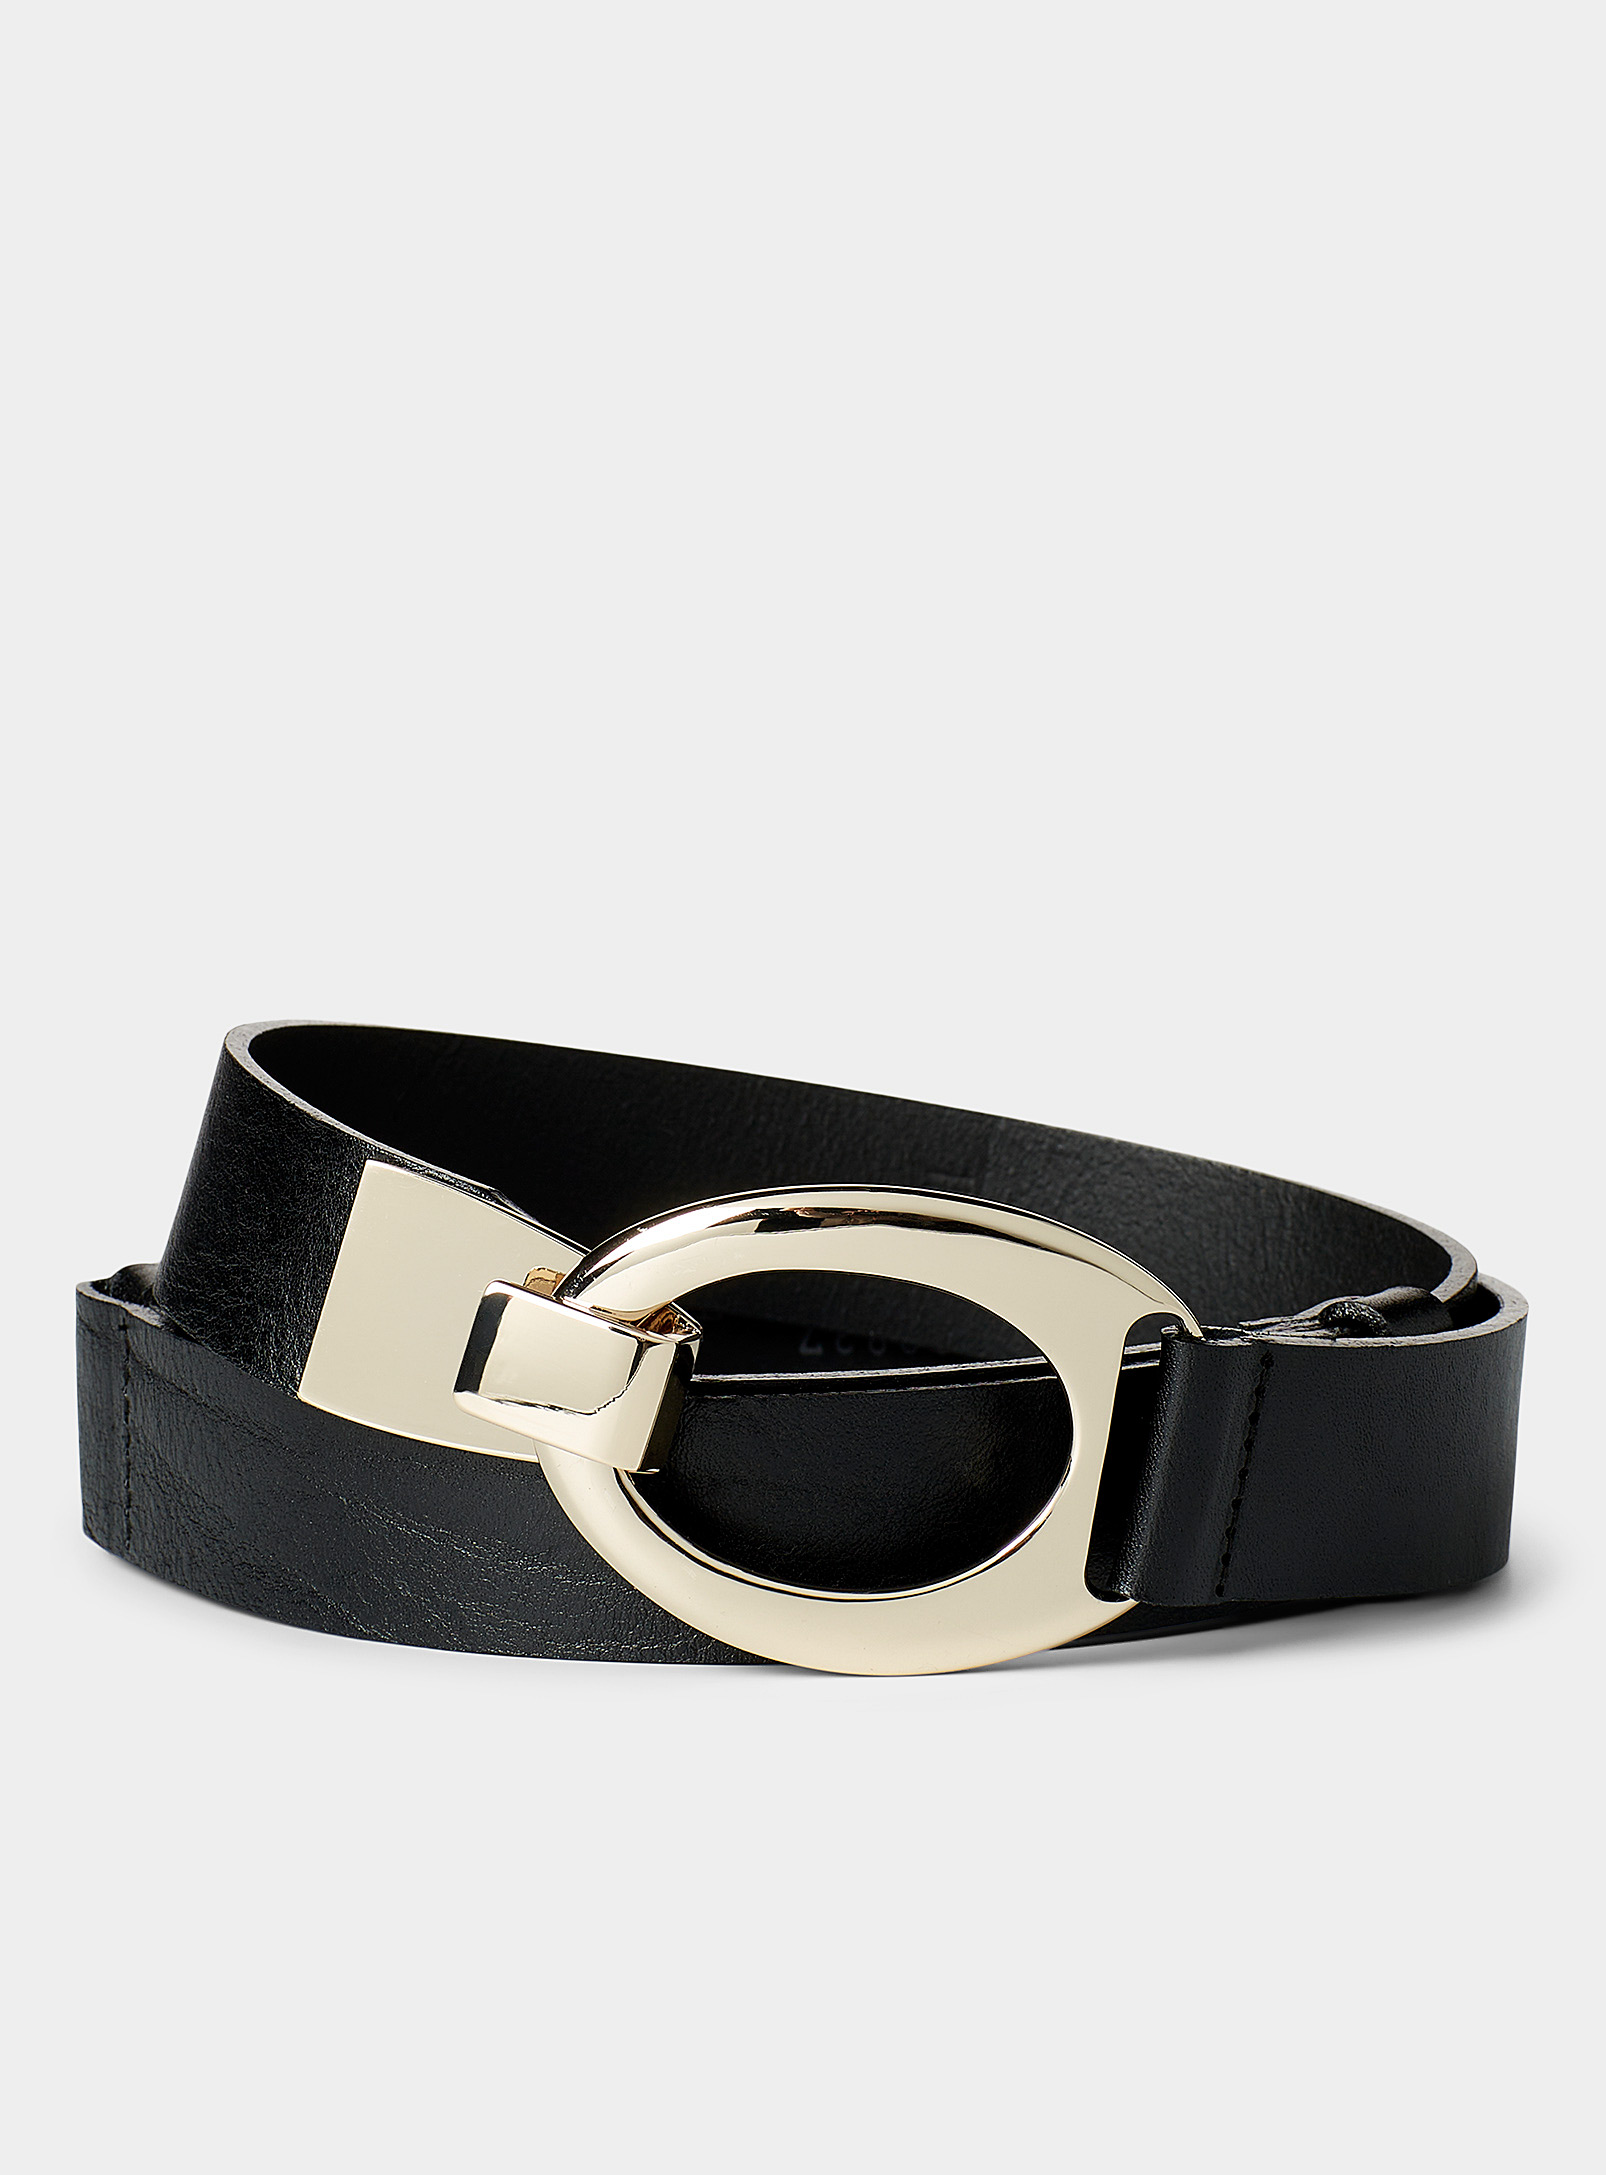 Simons - Women's Hook buckle leather belt